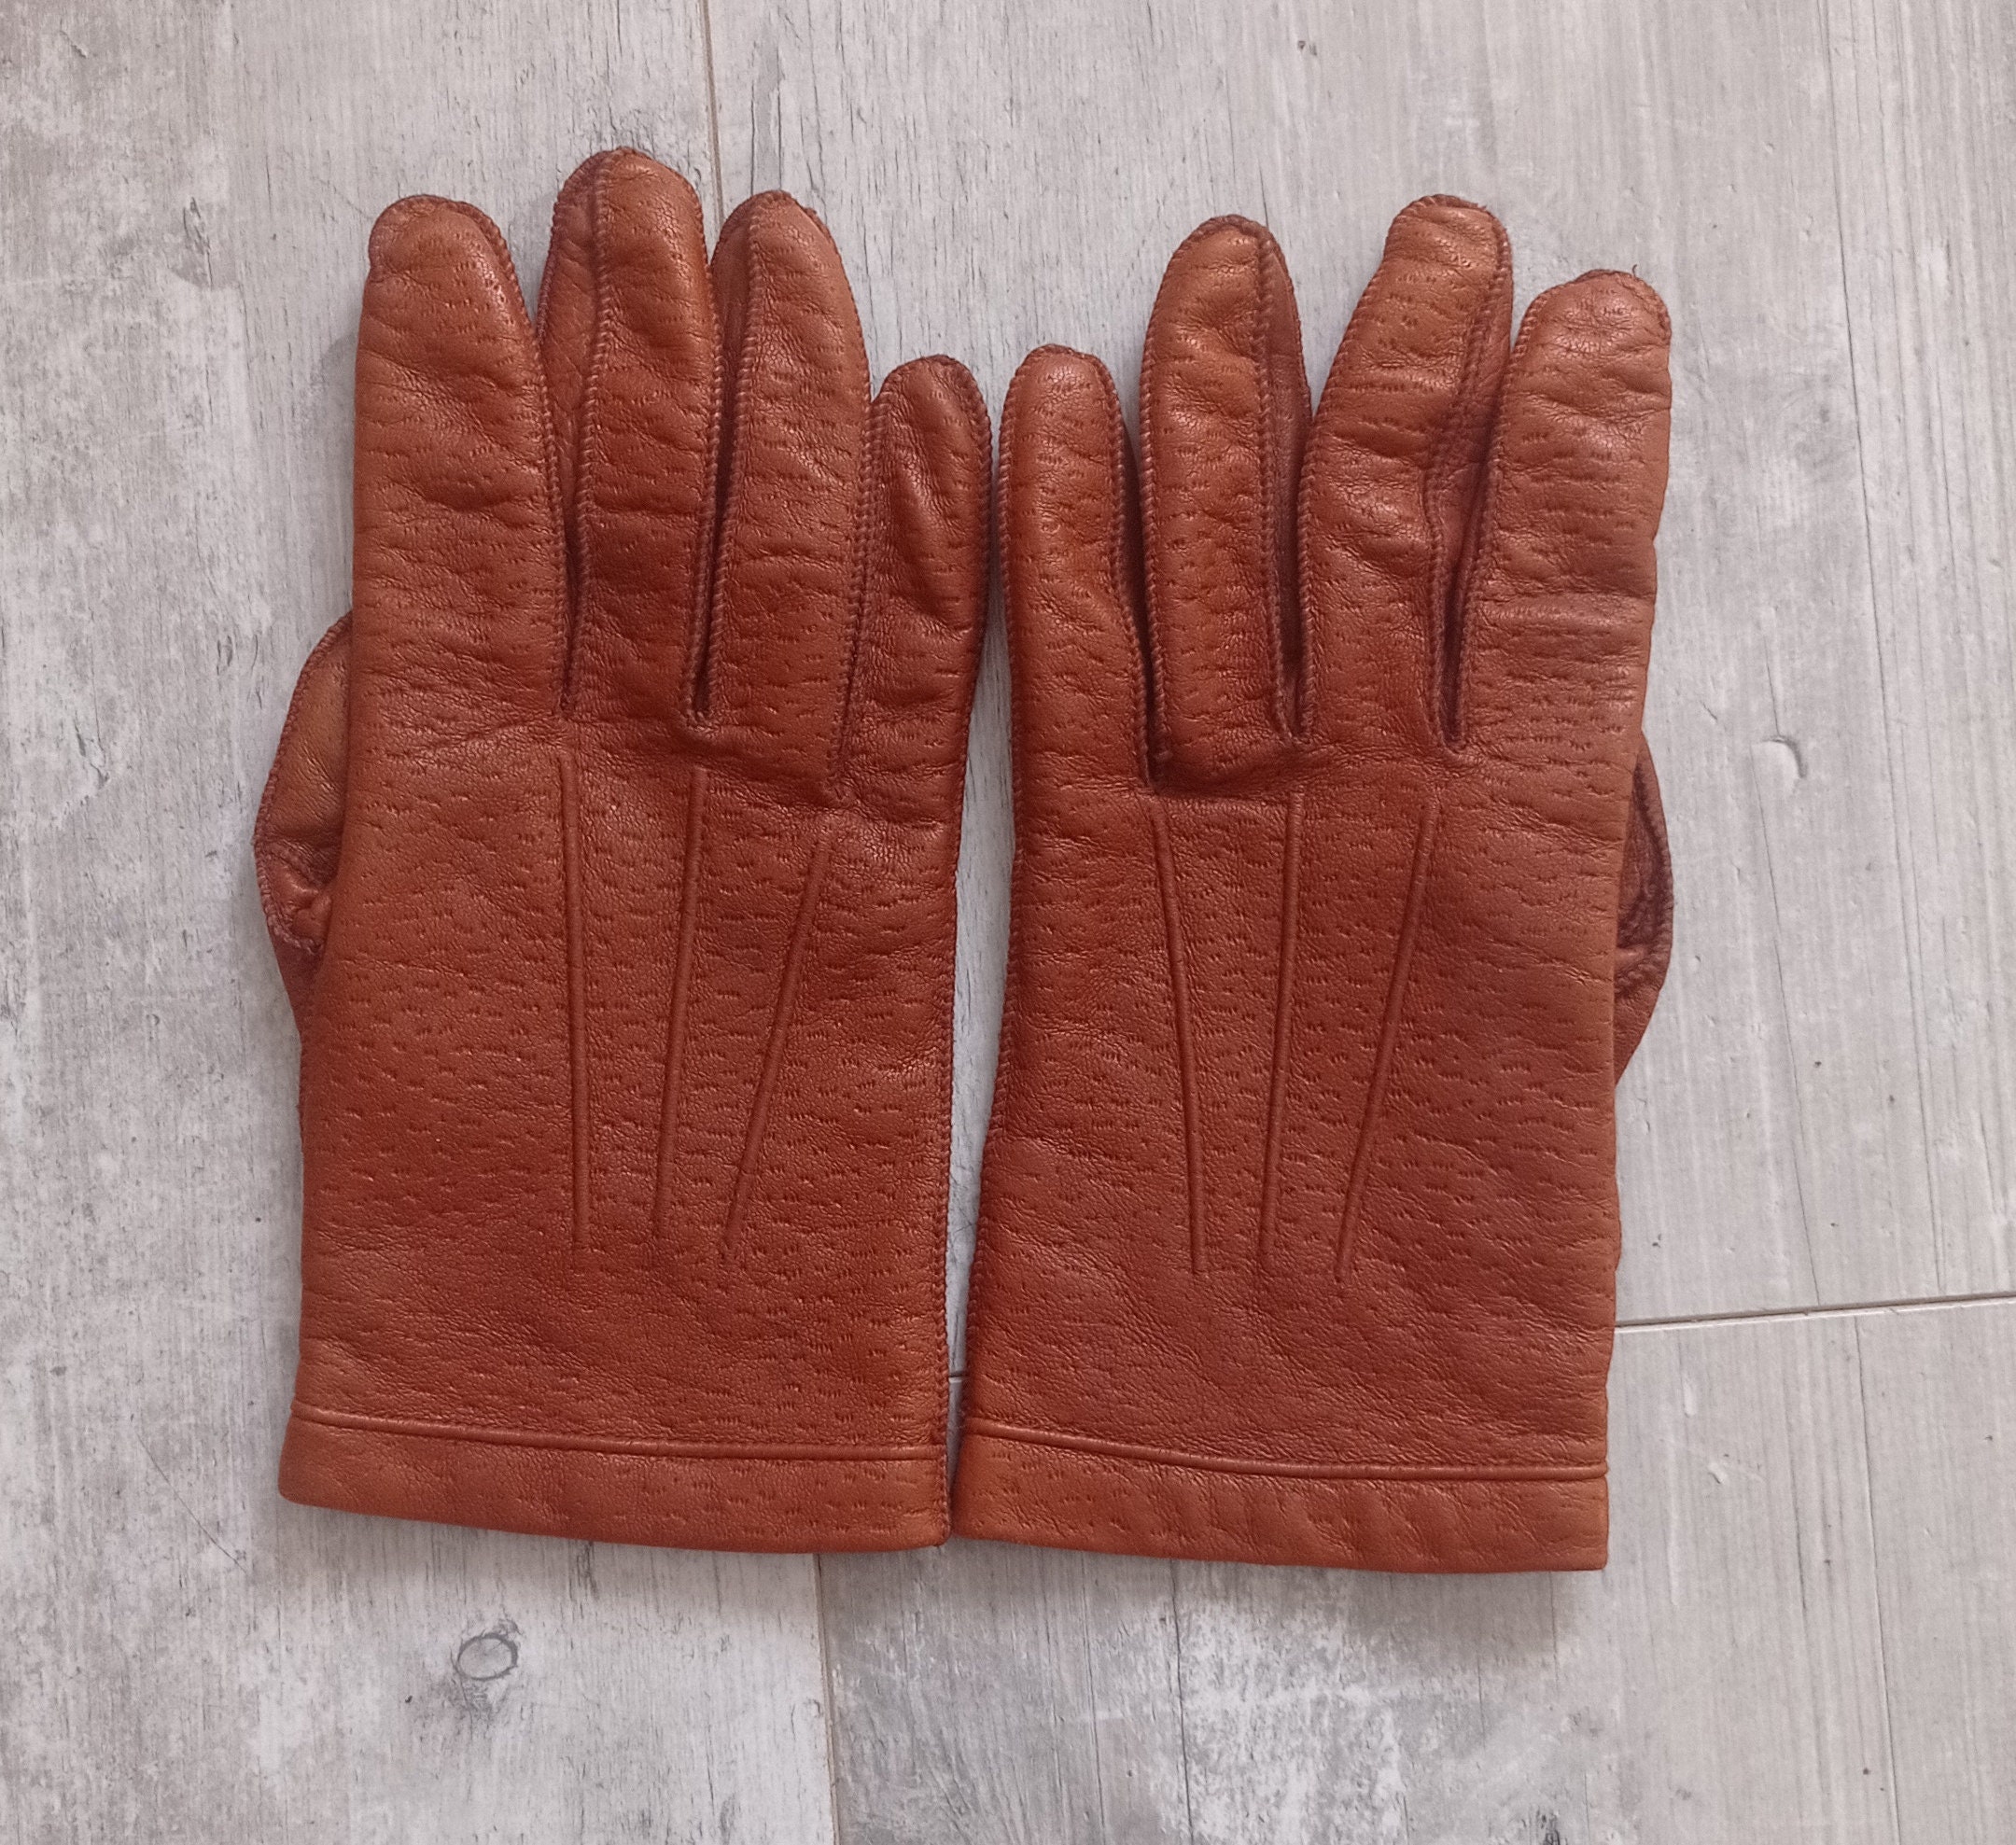 Peccary handschuhe - .de